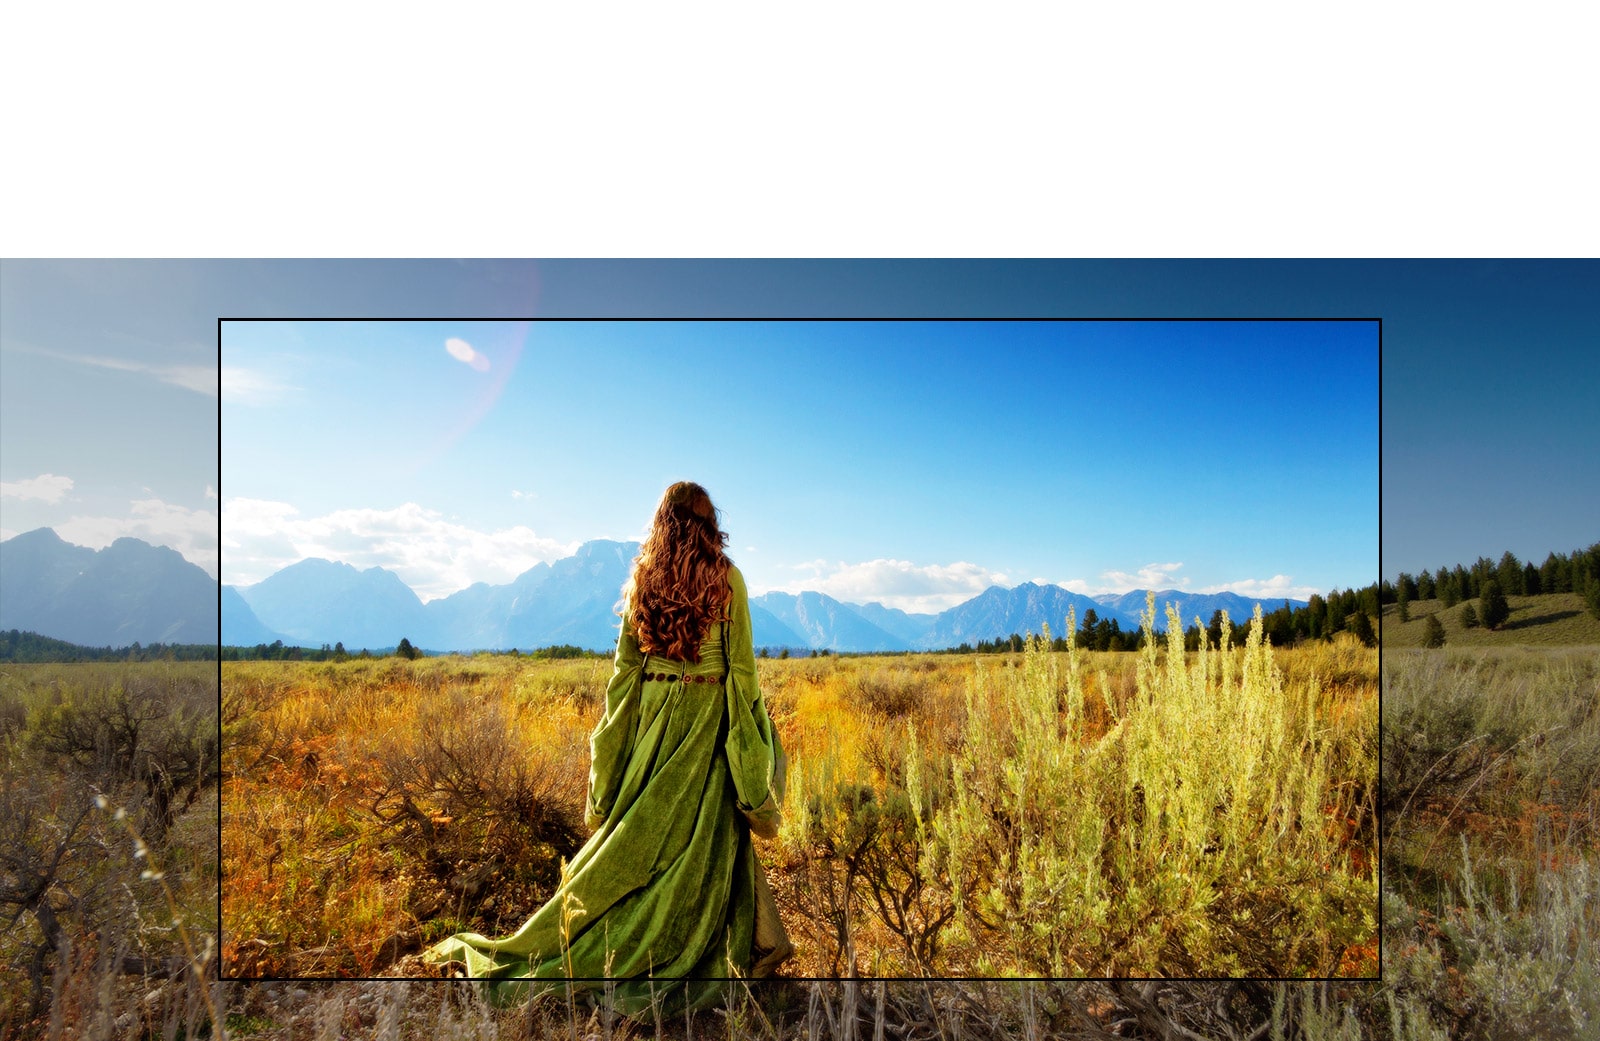 شاشة تلفزيون تعرض مشهدًا من فيلم خيالي مع امرأة تقف في الحقول المواجهة للجبال.